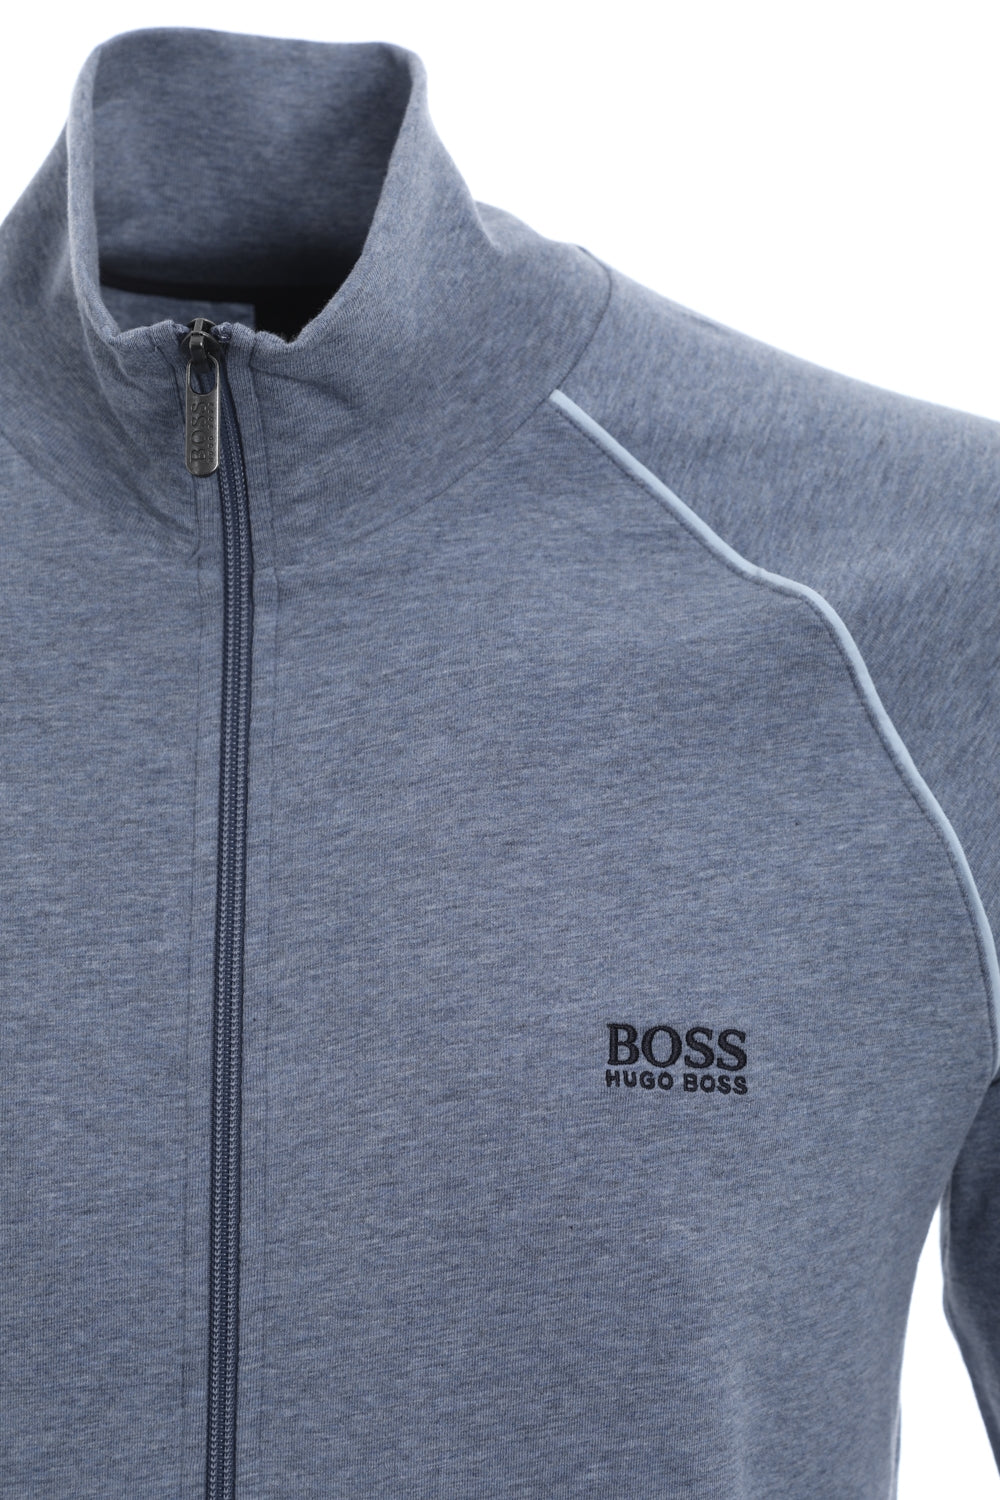 BOSS Mix & Match Jacket Z Sweatshirt in Sky Blue Marle